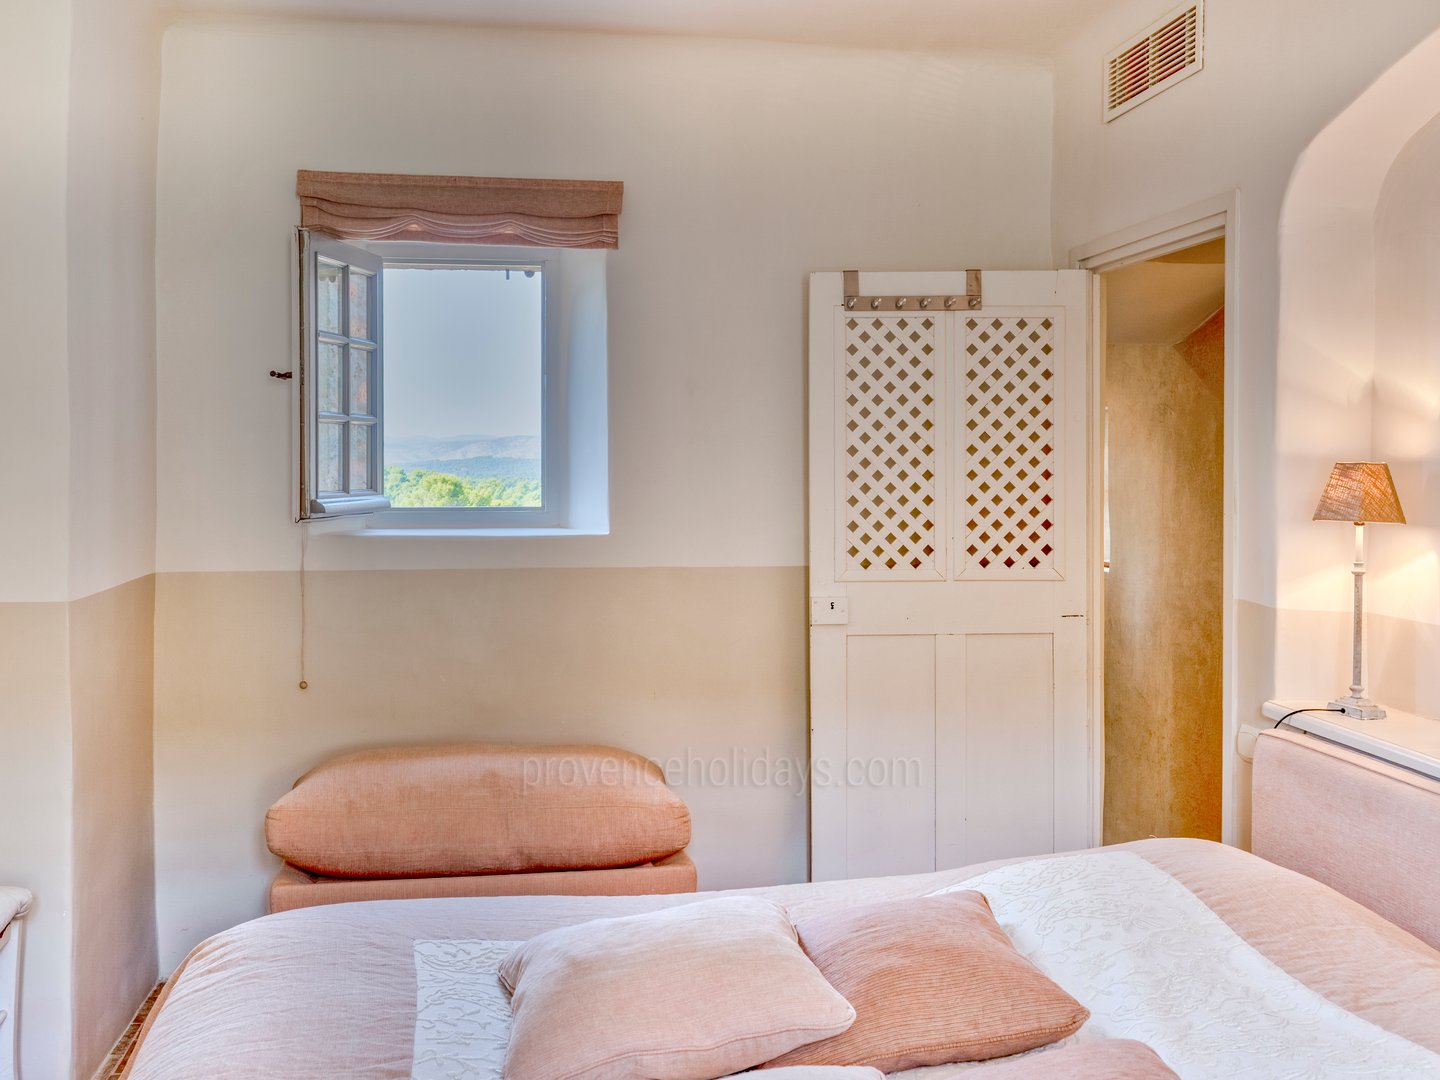 61 - Domaine de la Sainte Victoire: Villa: Bedroom